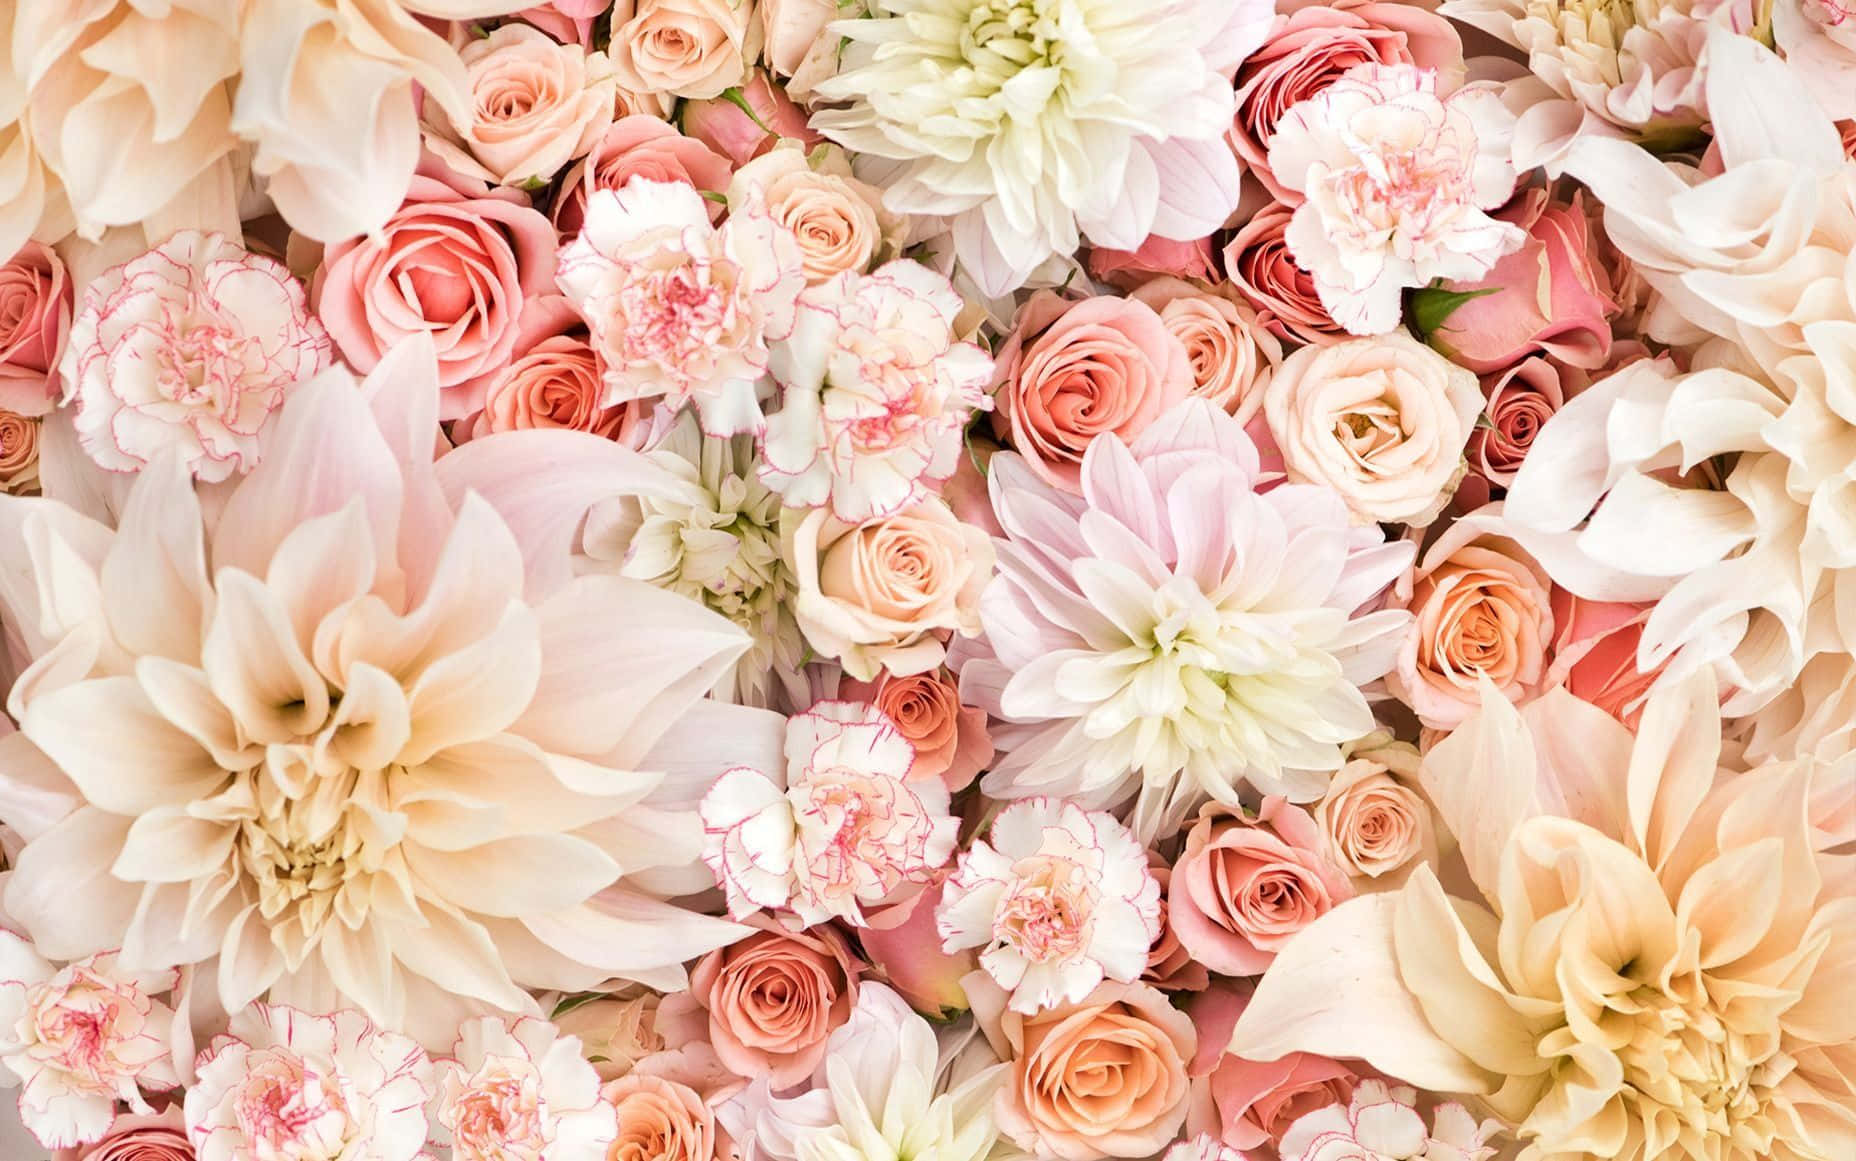 Blooming Aesthetic Rose Wallpaper